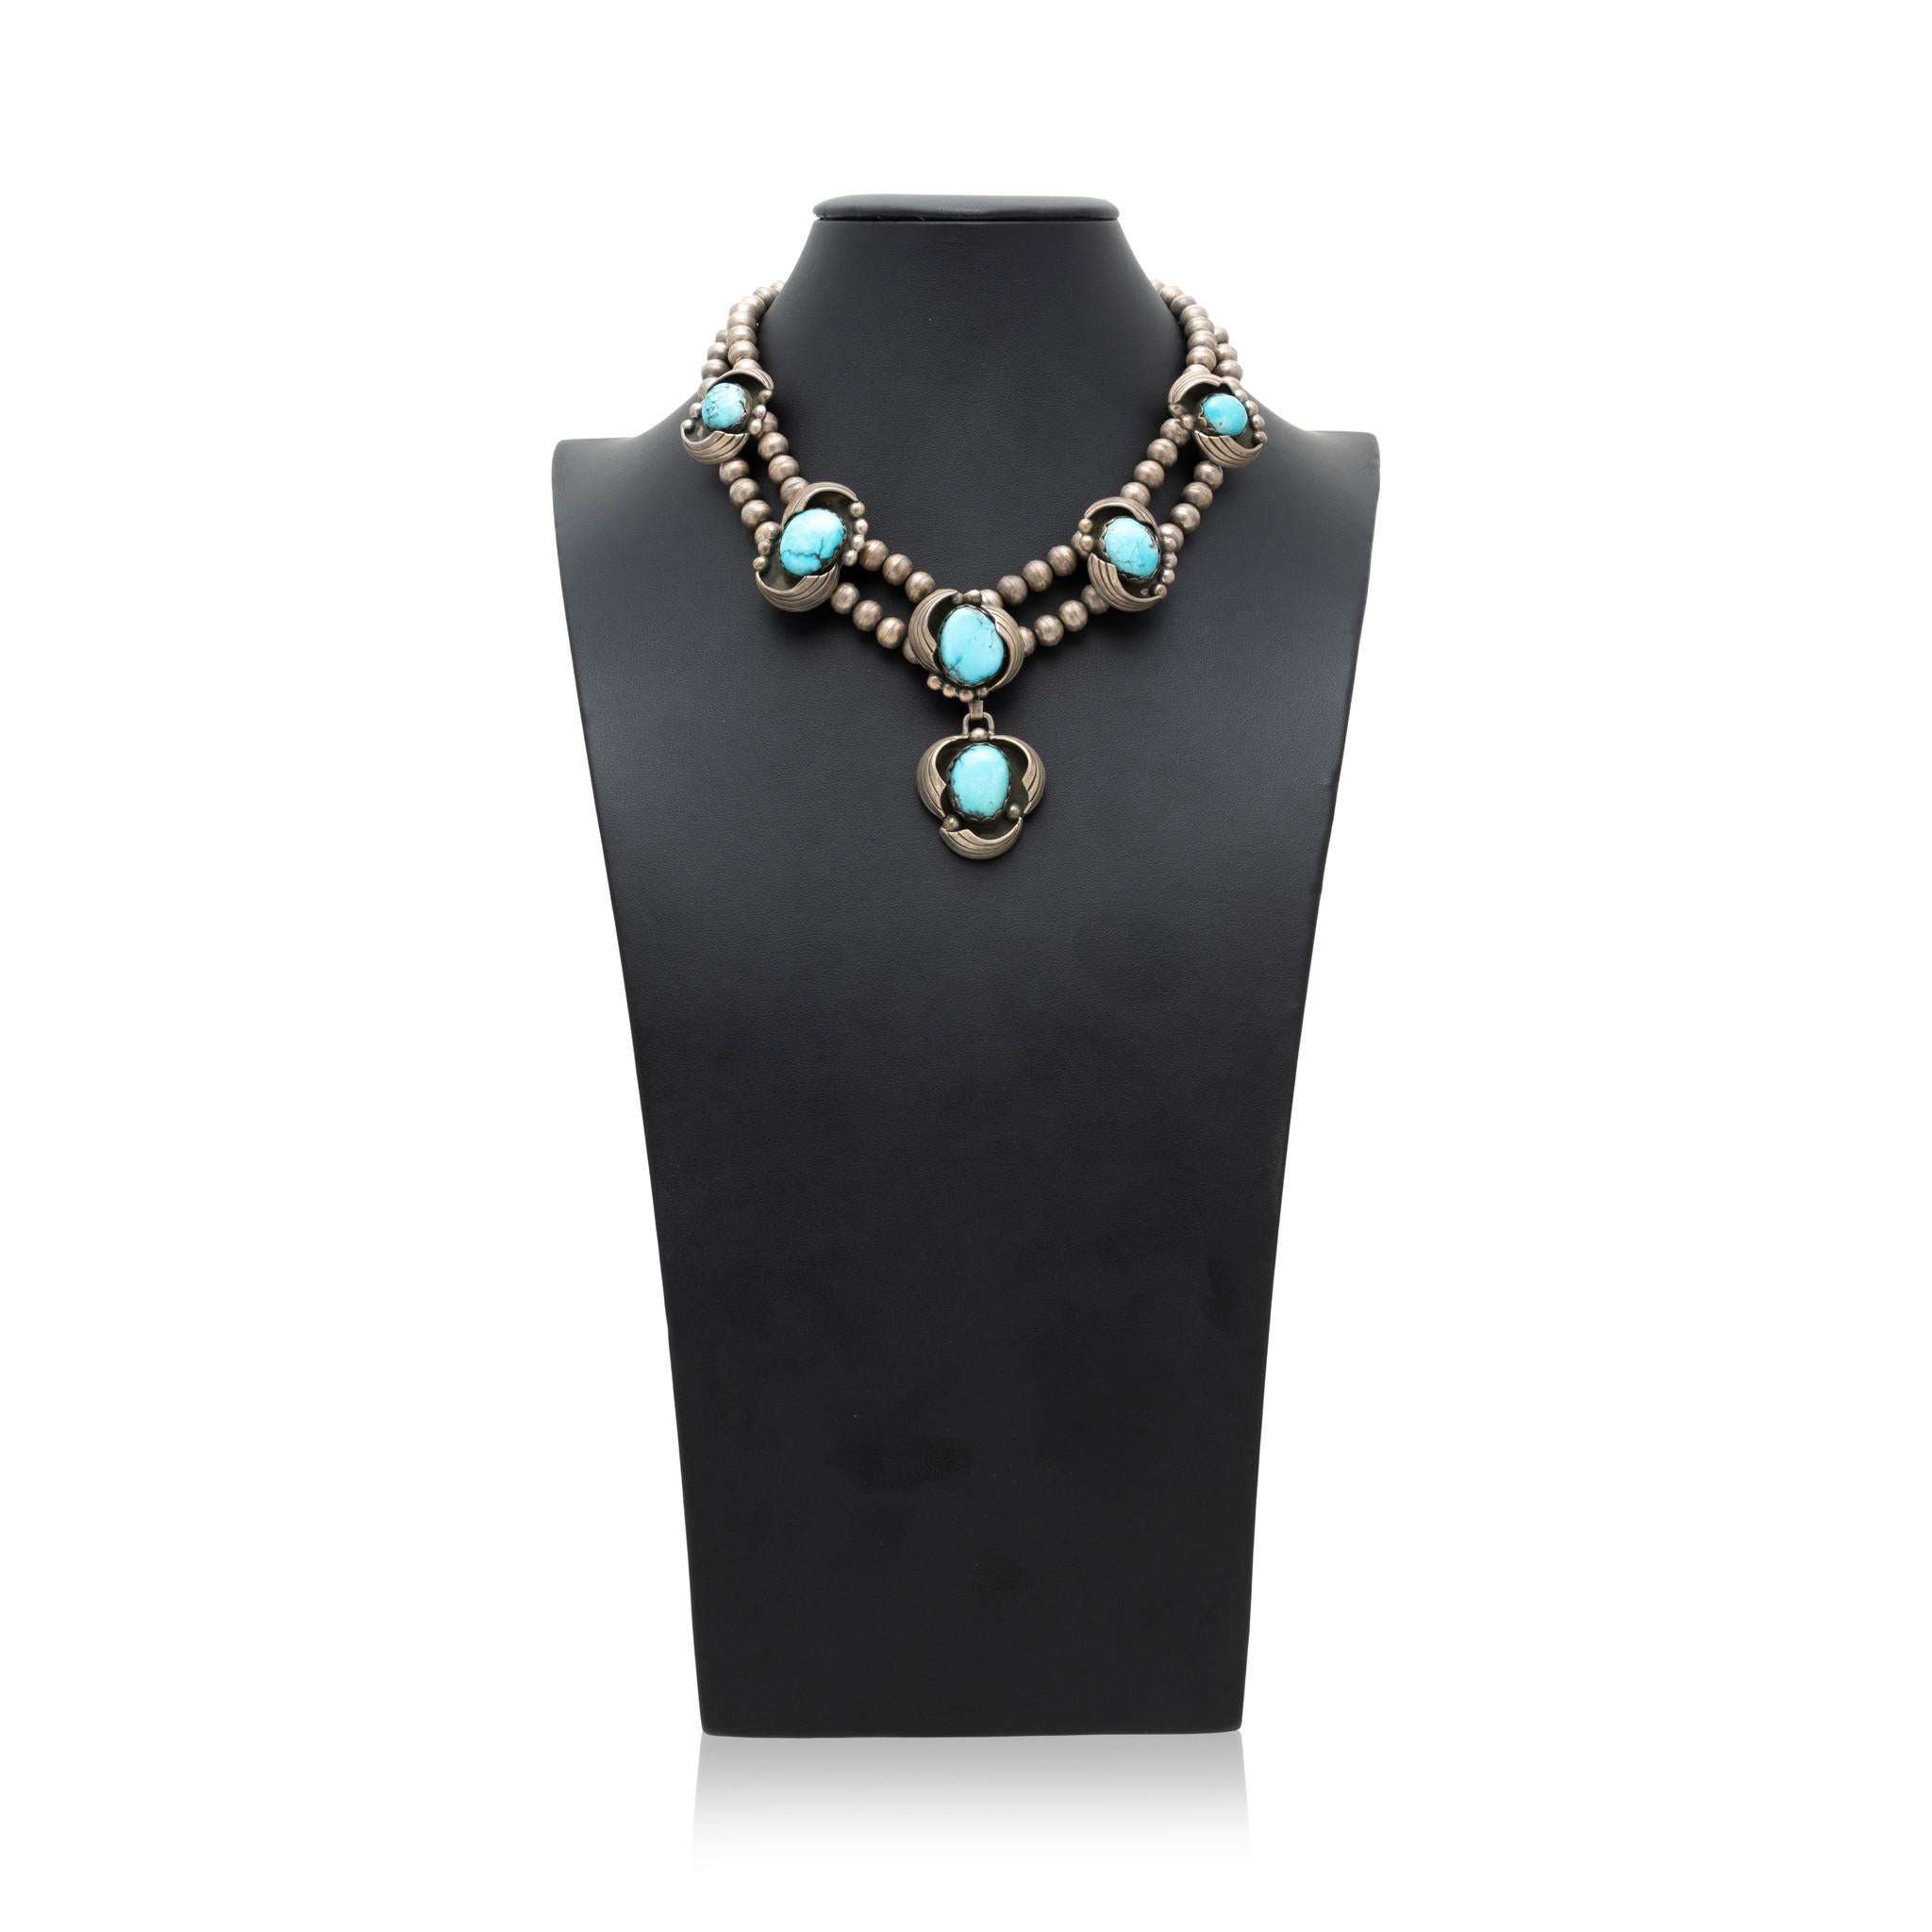 Doppelstrang Navajo Perle Sterling Silber und Morenci Türkis Halskette. Sechs hochwertige Steine, die jeweils in ein Sterling-Feder- und Perlendesign vor einem Hintergrund im Schattenbox-Stil eingefasst sind. Tolle Patina. Die Steine sind leuchtend